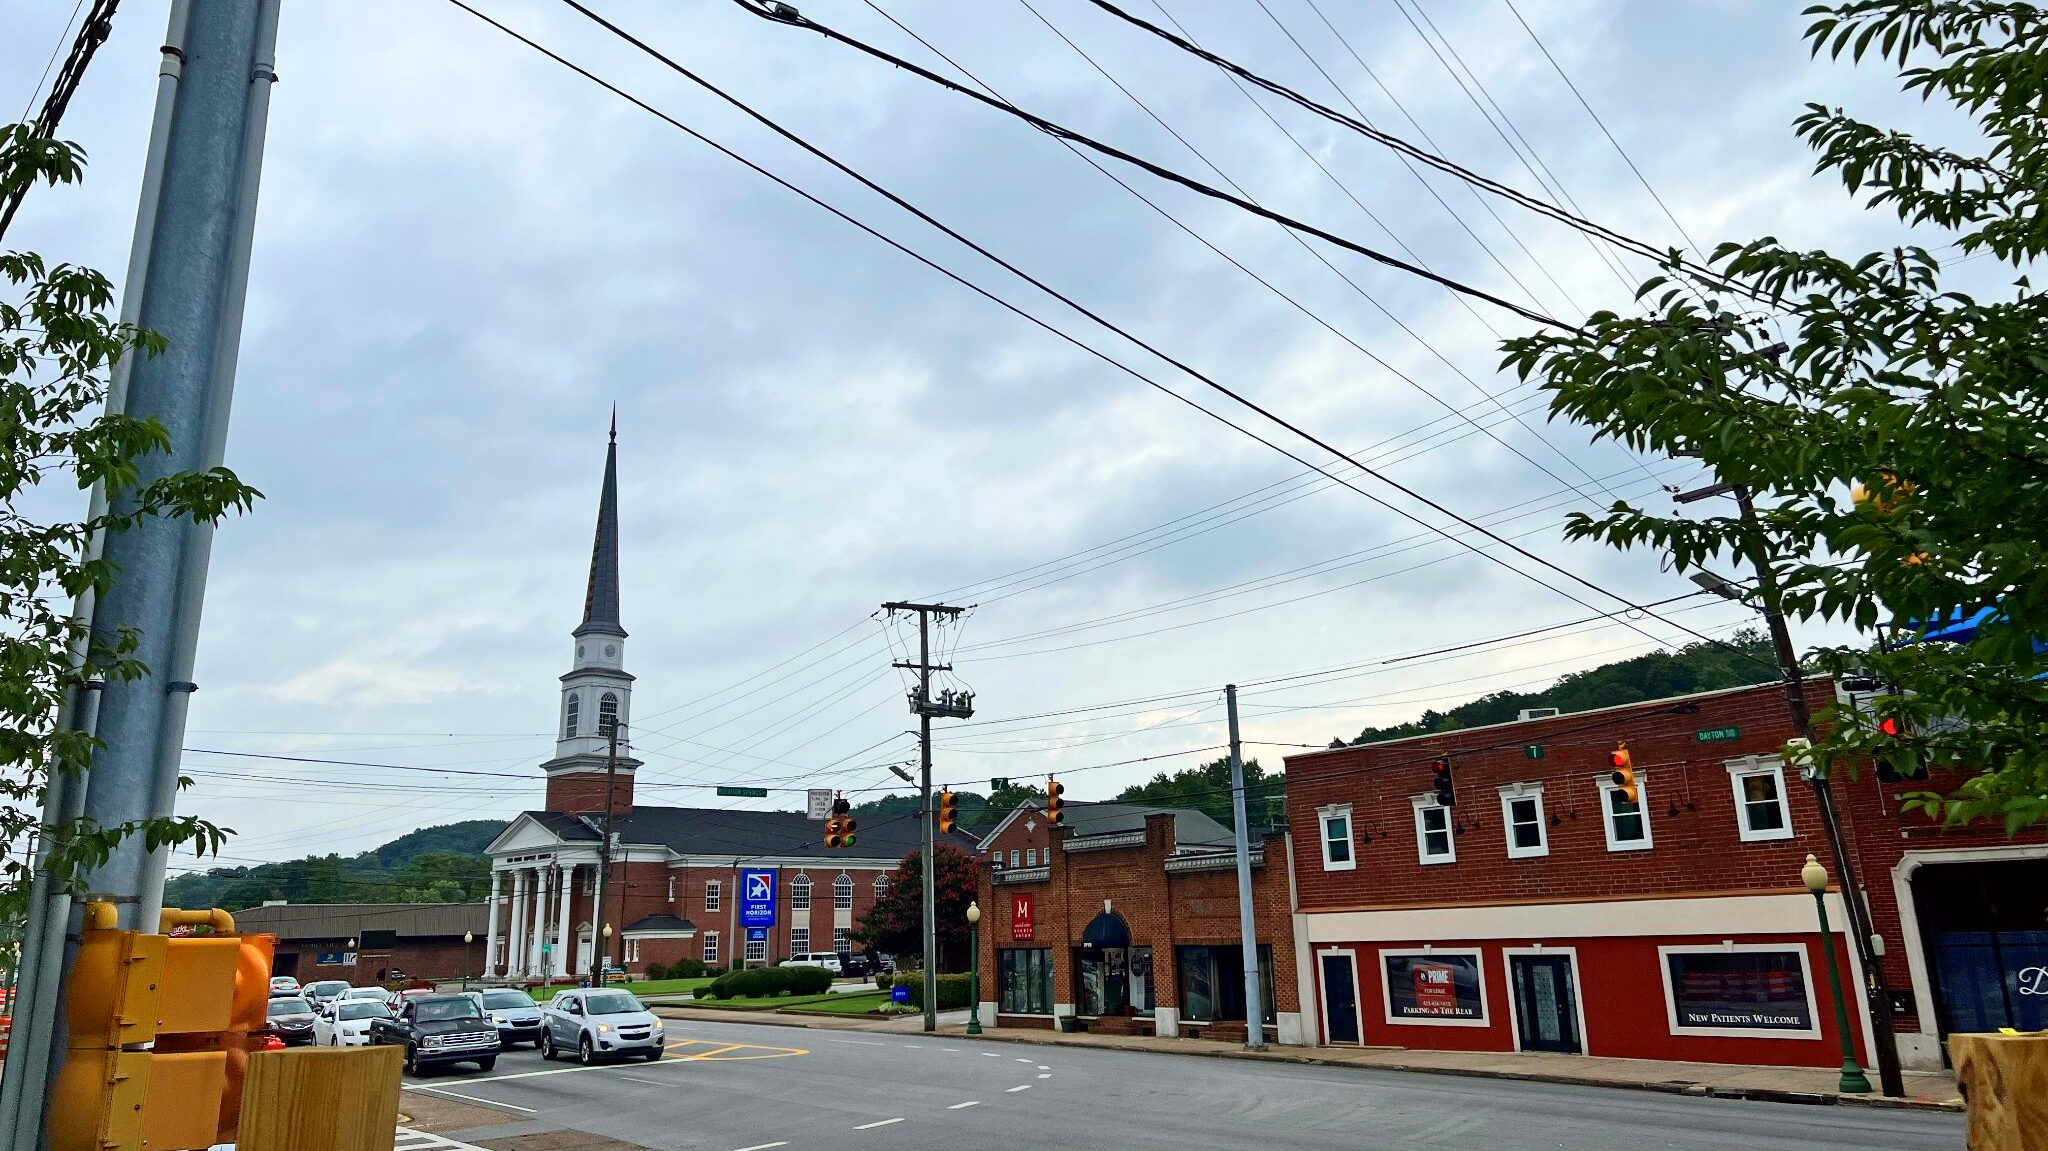 Top 10 Chattanooga Neighborhoods - Red Bank